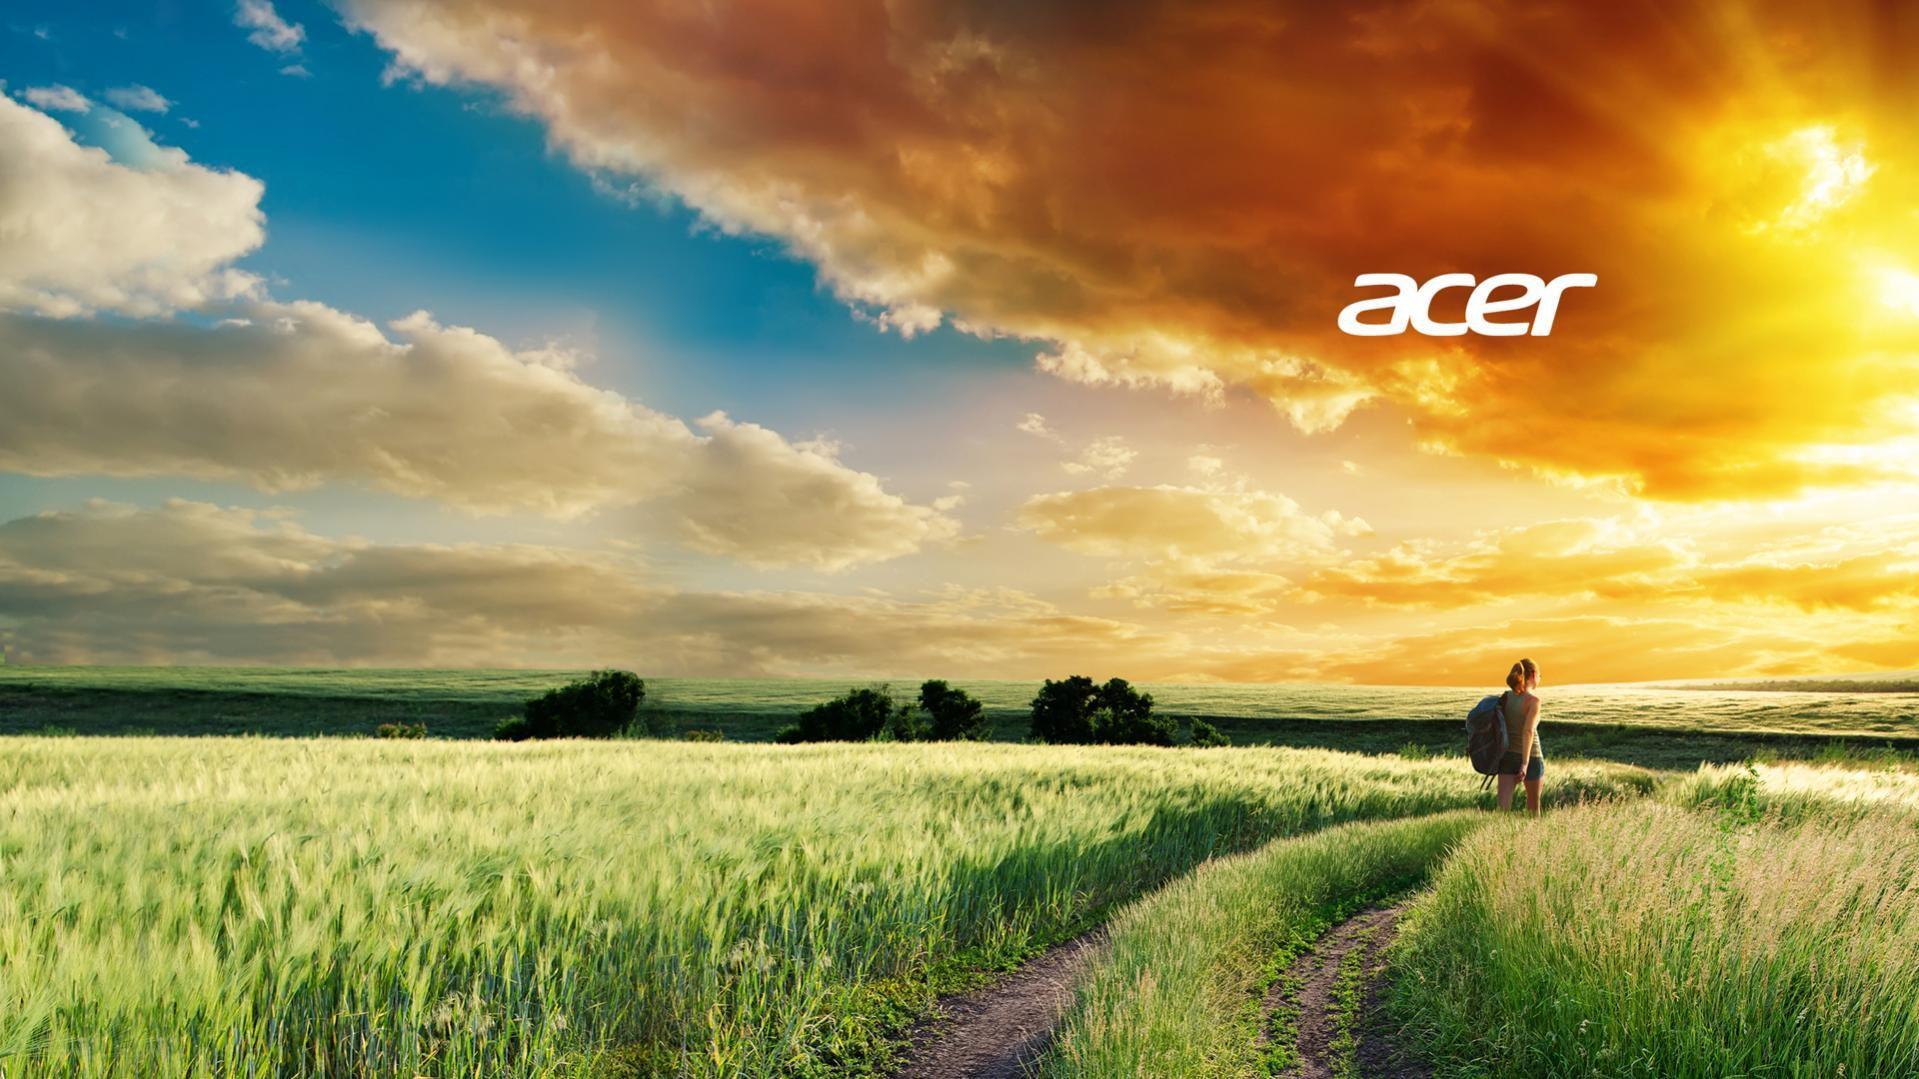 Acer Wallpaper, 37 Widescreen HD Wallpaper of Acer